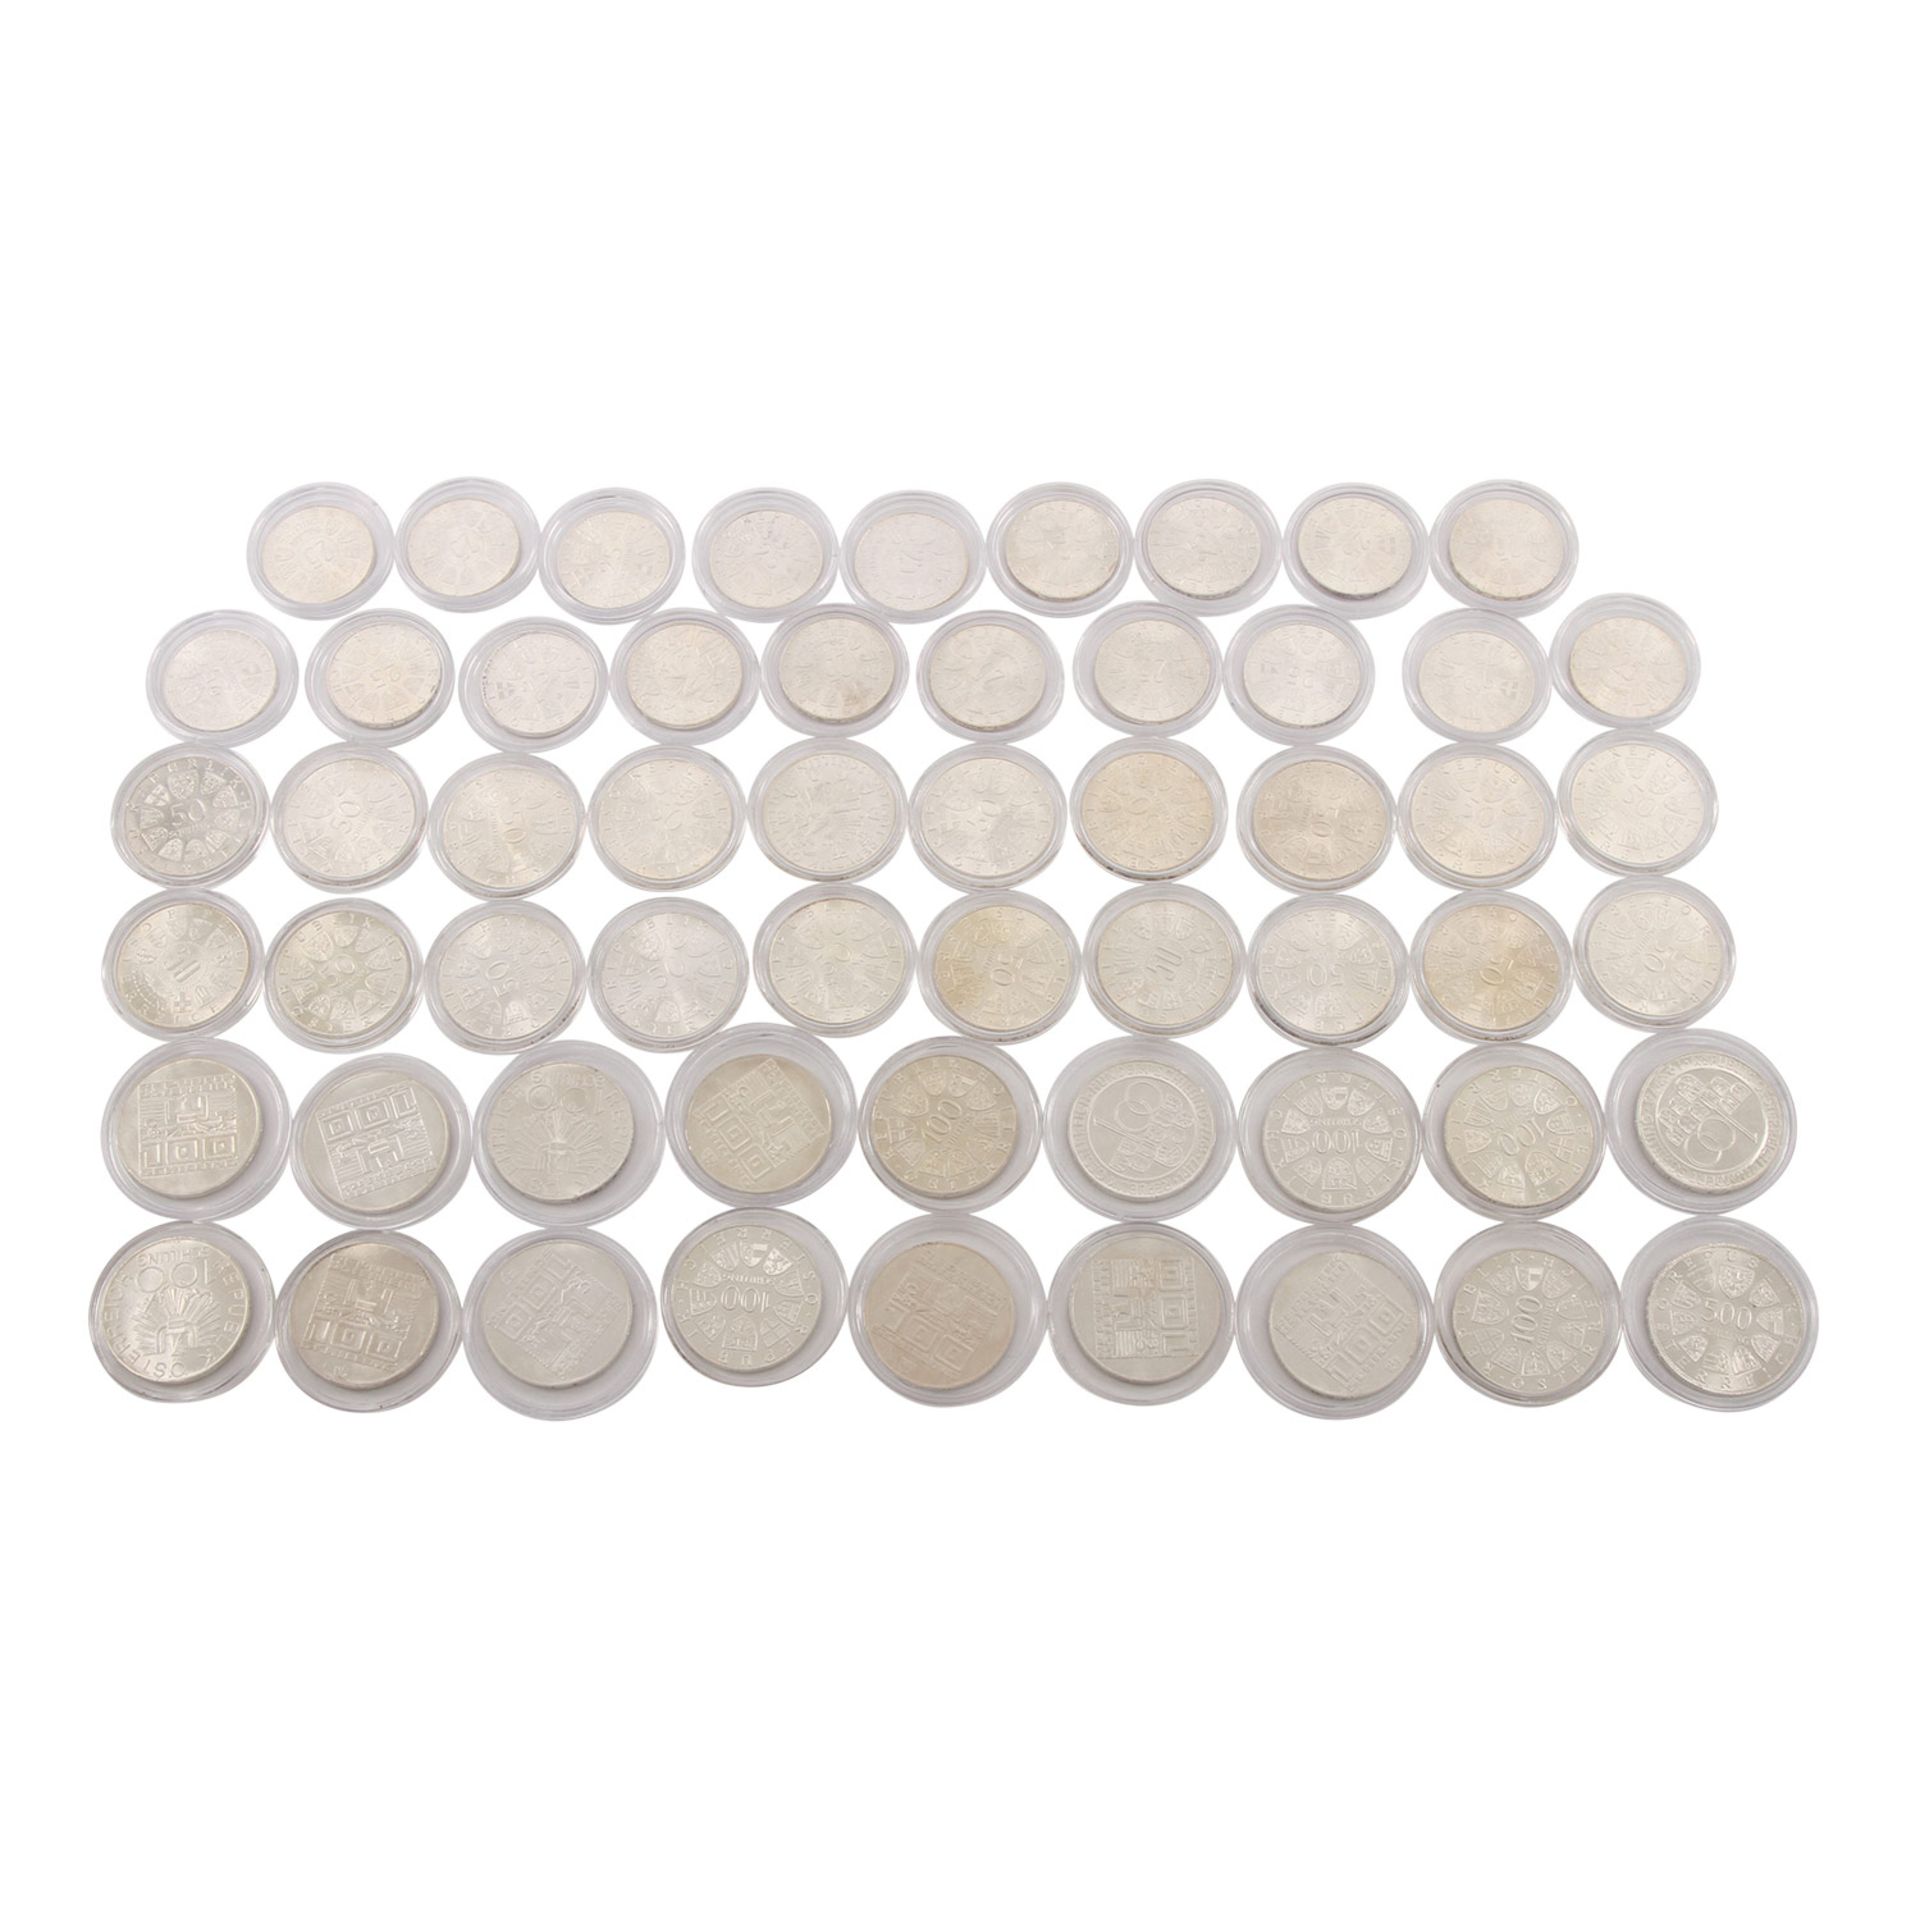 Österreich/Silber - gesamt gut 800 g Silber fein, 1 x 500 Schilling, 17 x 100 Schilling, 20 x 50